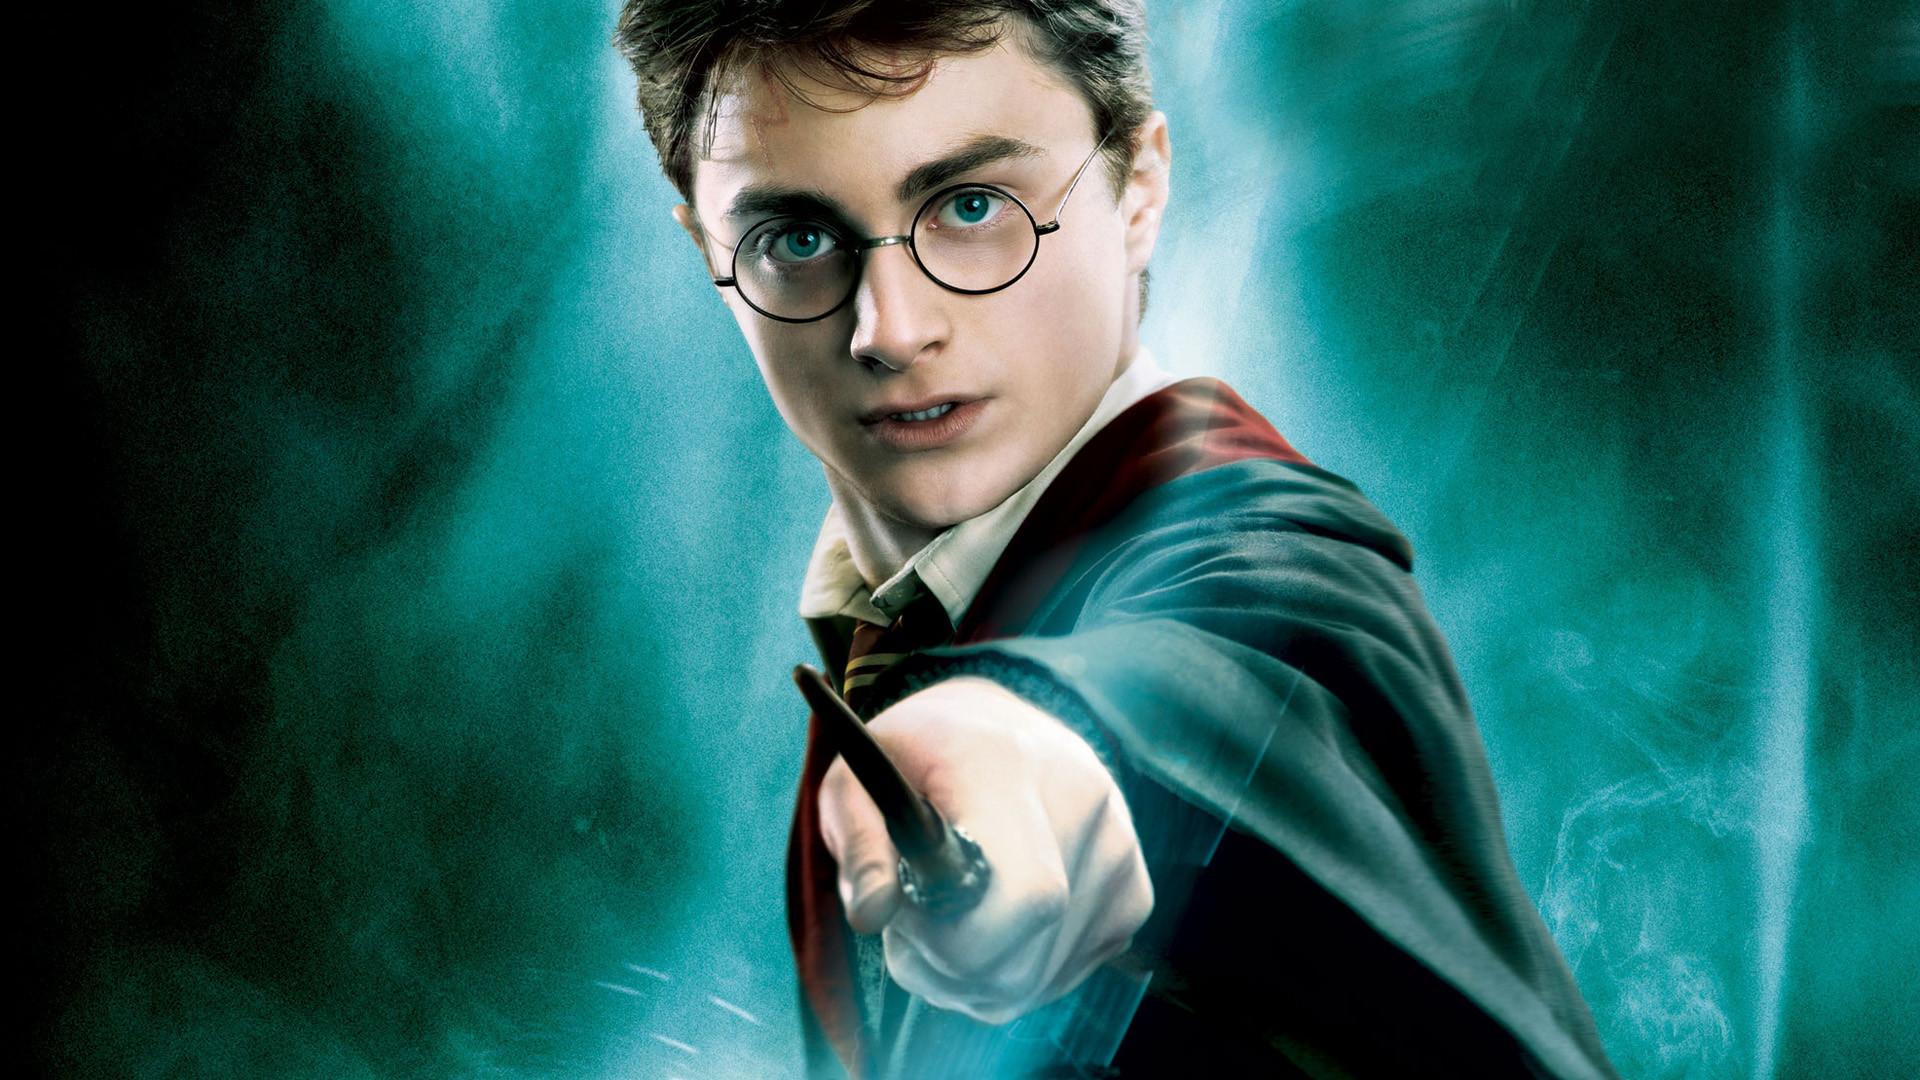 Testez-vous sur ce quiz : Harry Potter - Les objets magiques - Babelio